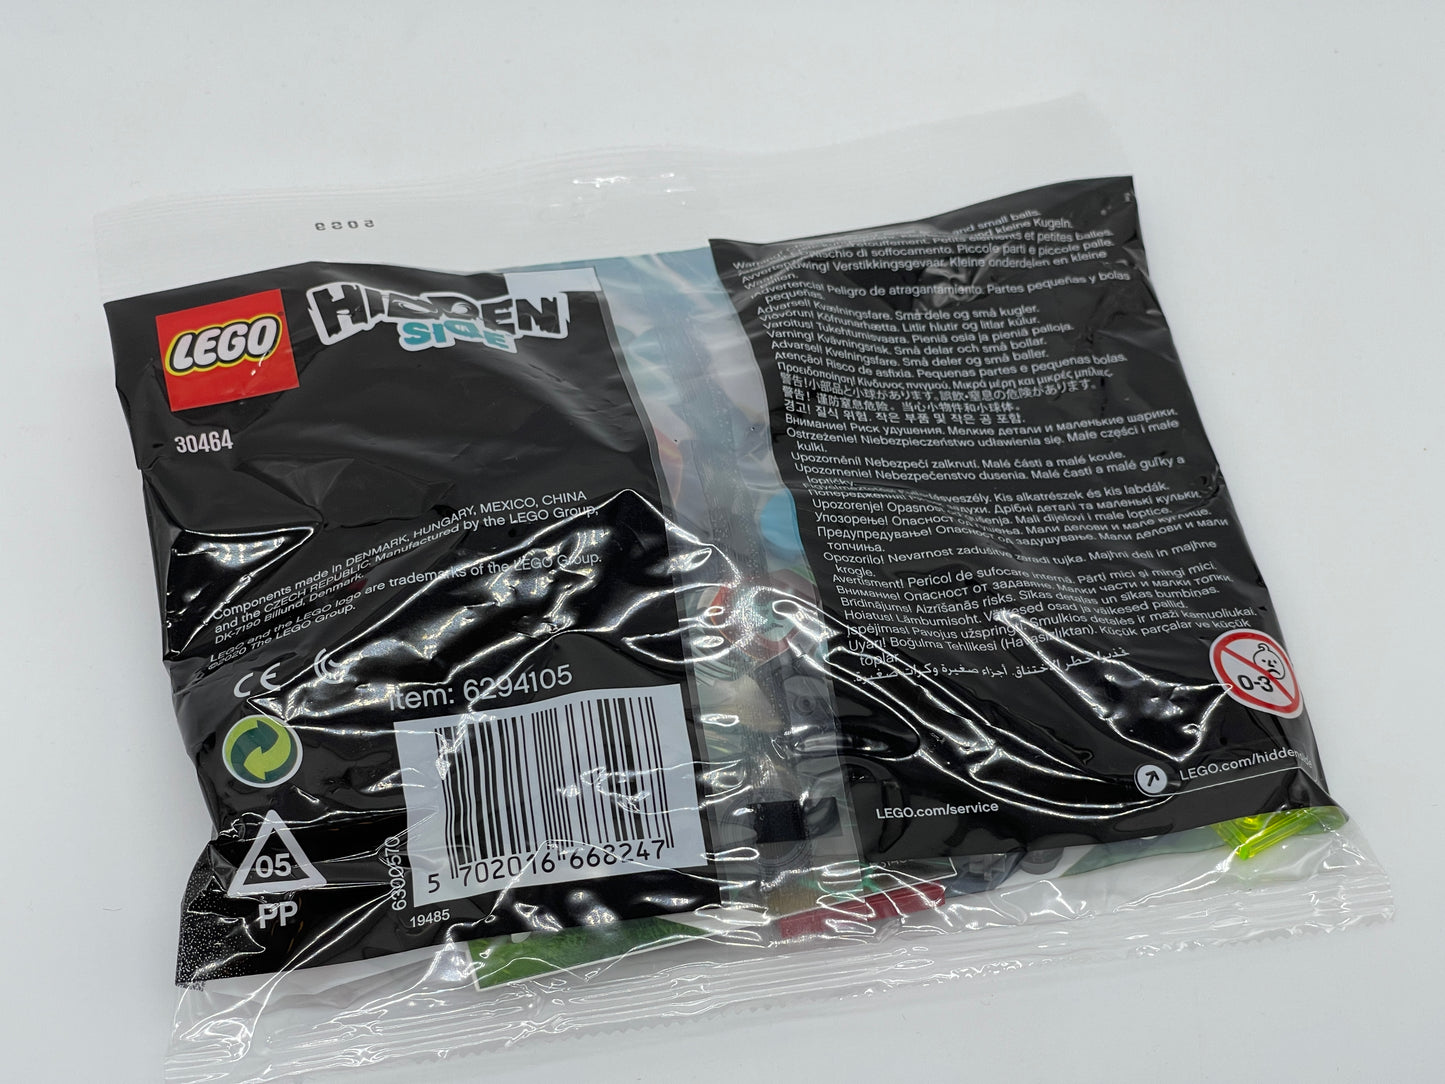 Polybag LEGO Hidden Side 30464 - EL FUEGO STUNT KANONE - 2020